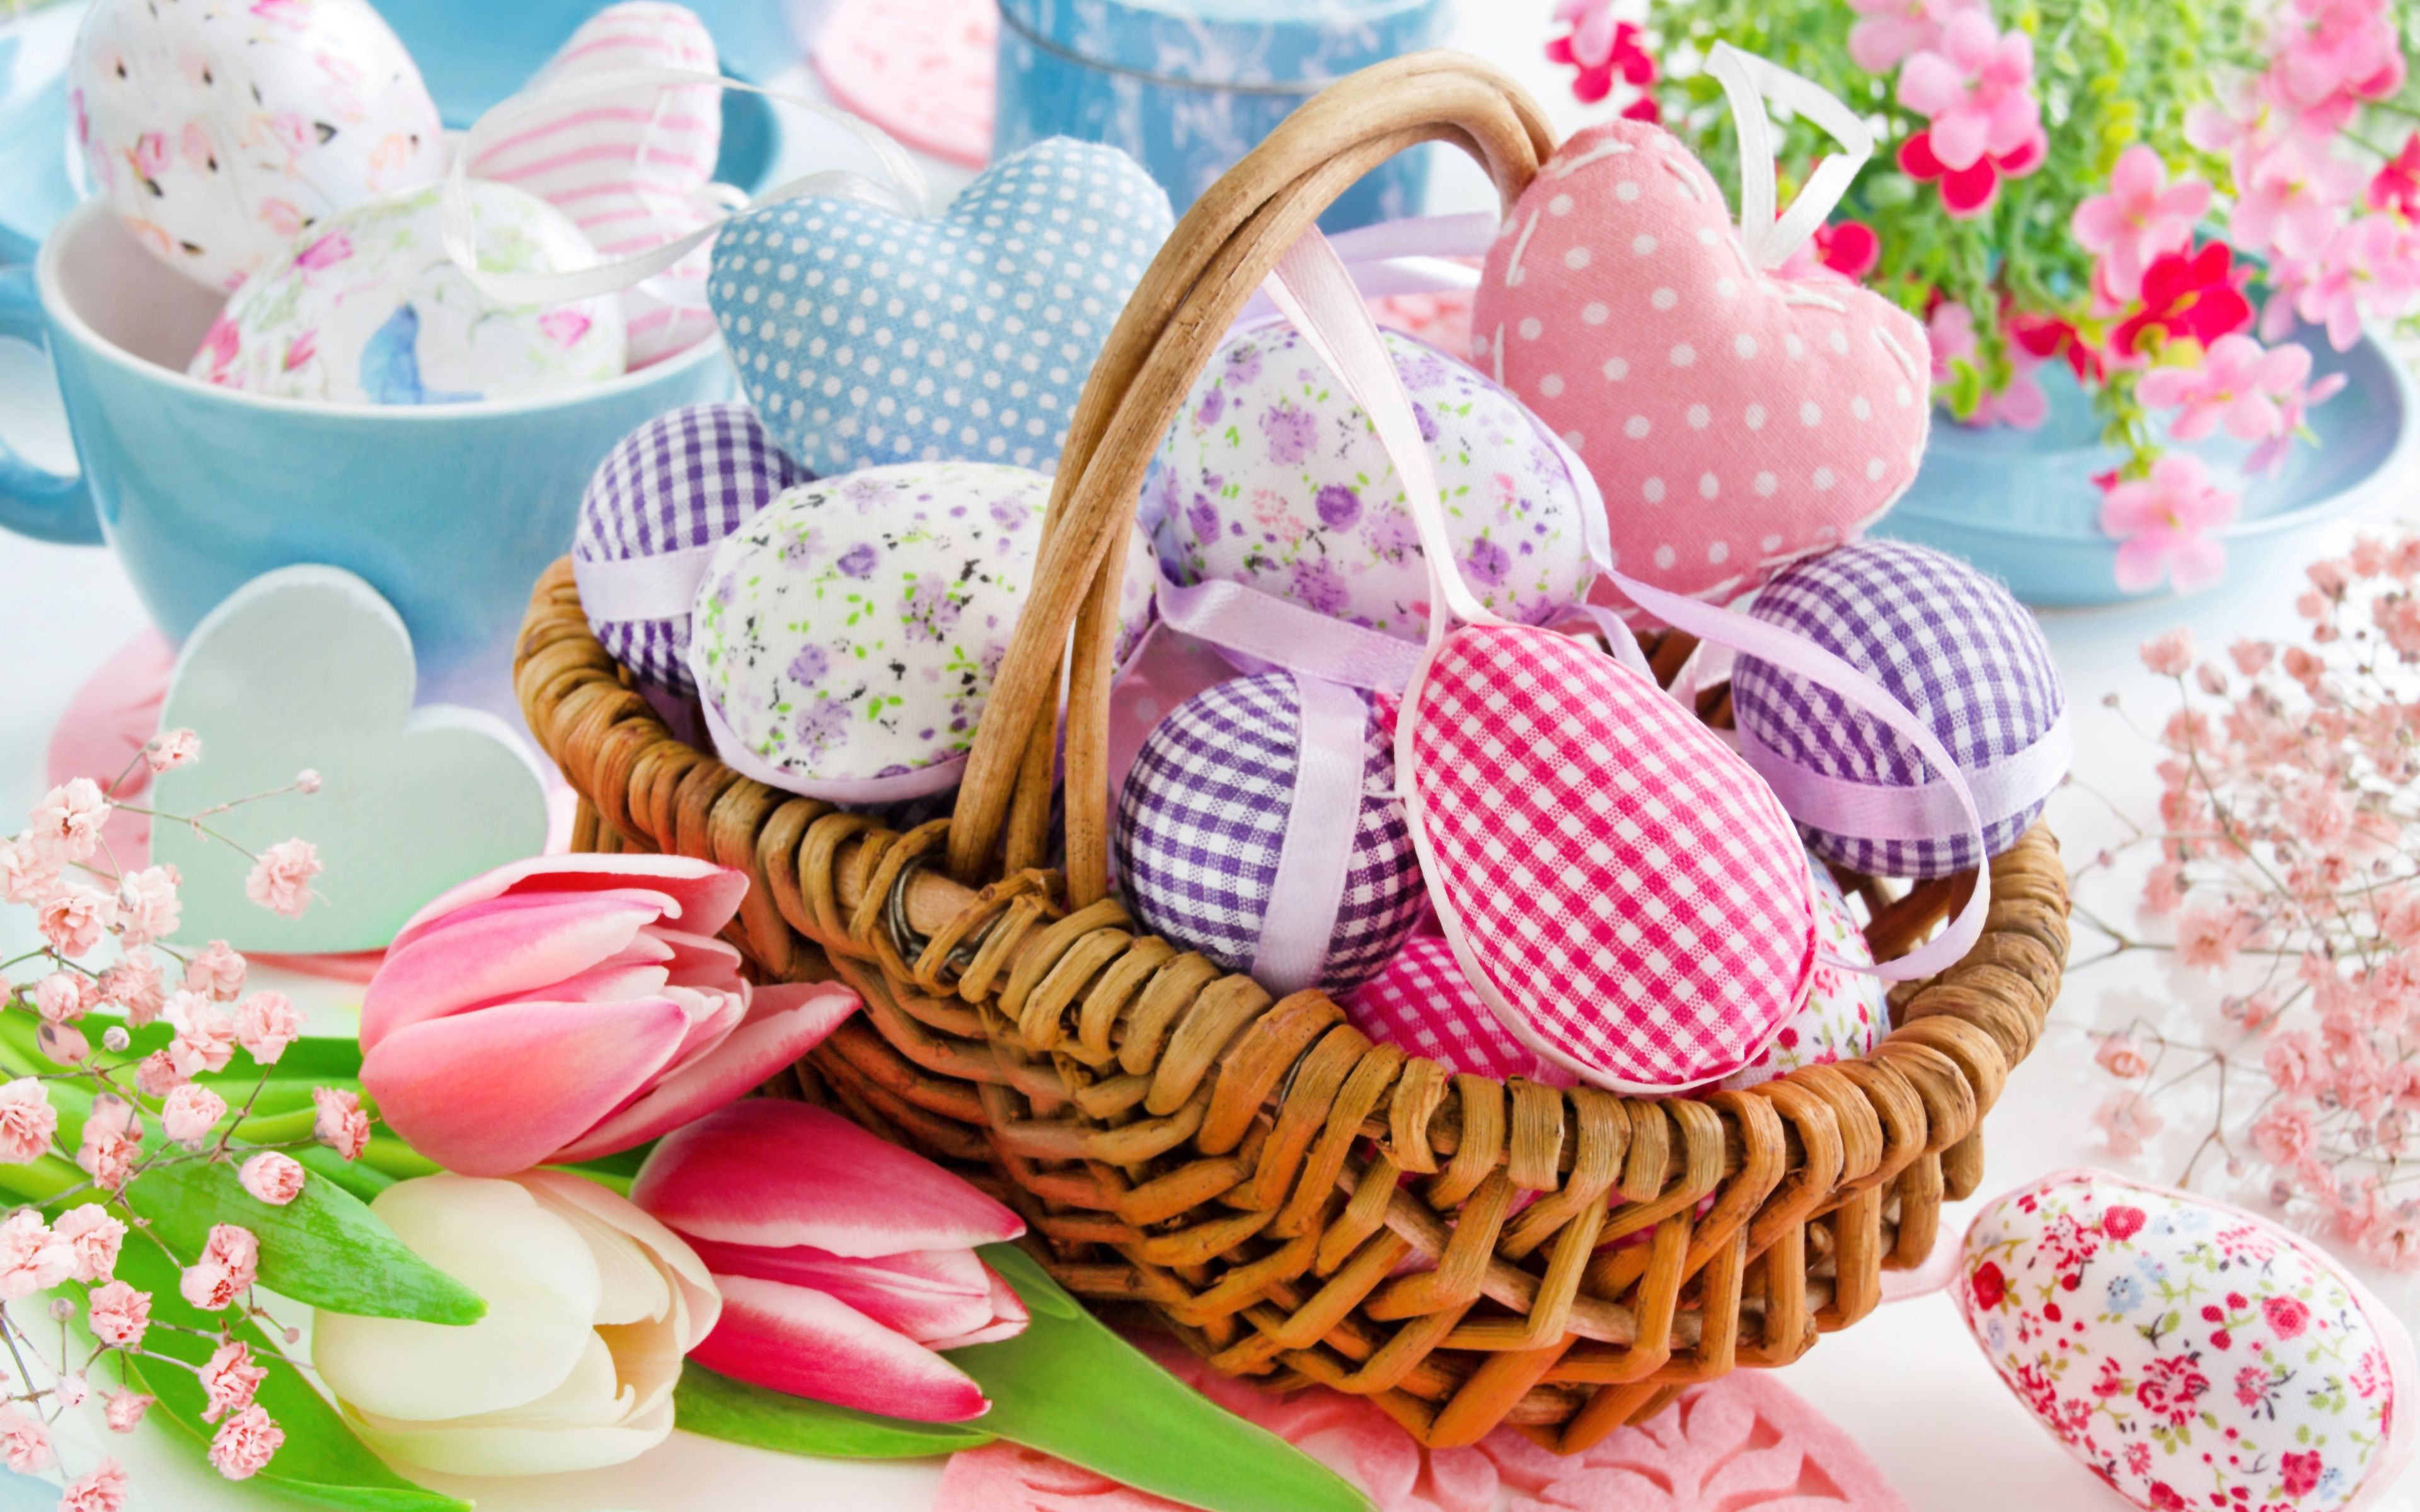 Download wallpaper 4k, Easter basket, Happy Easter, easter eggs